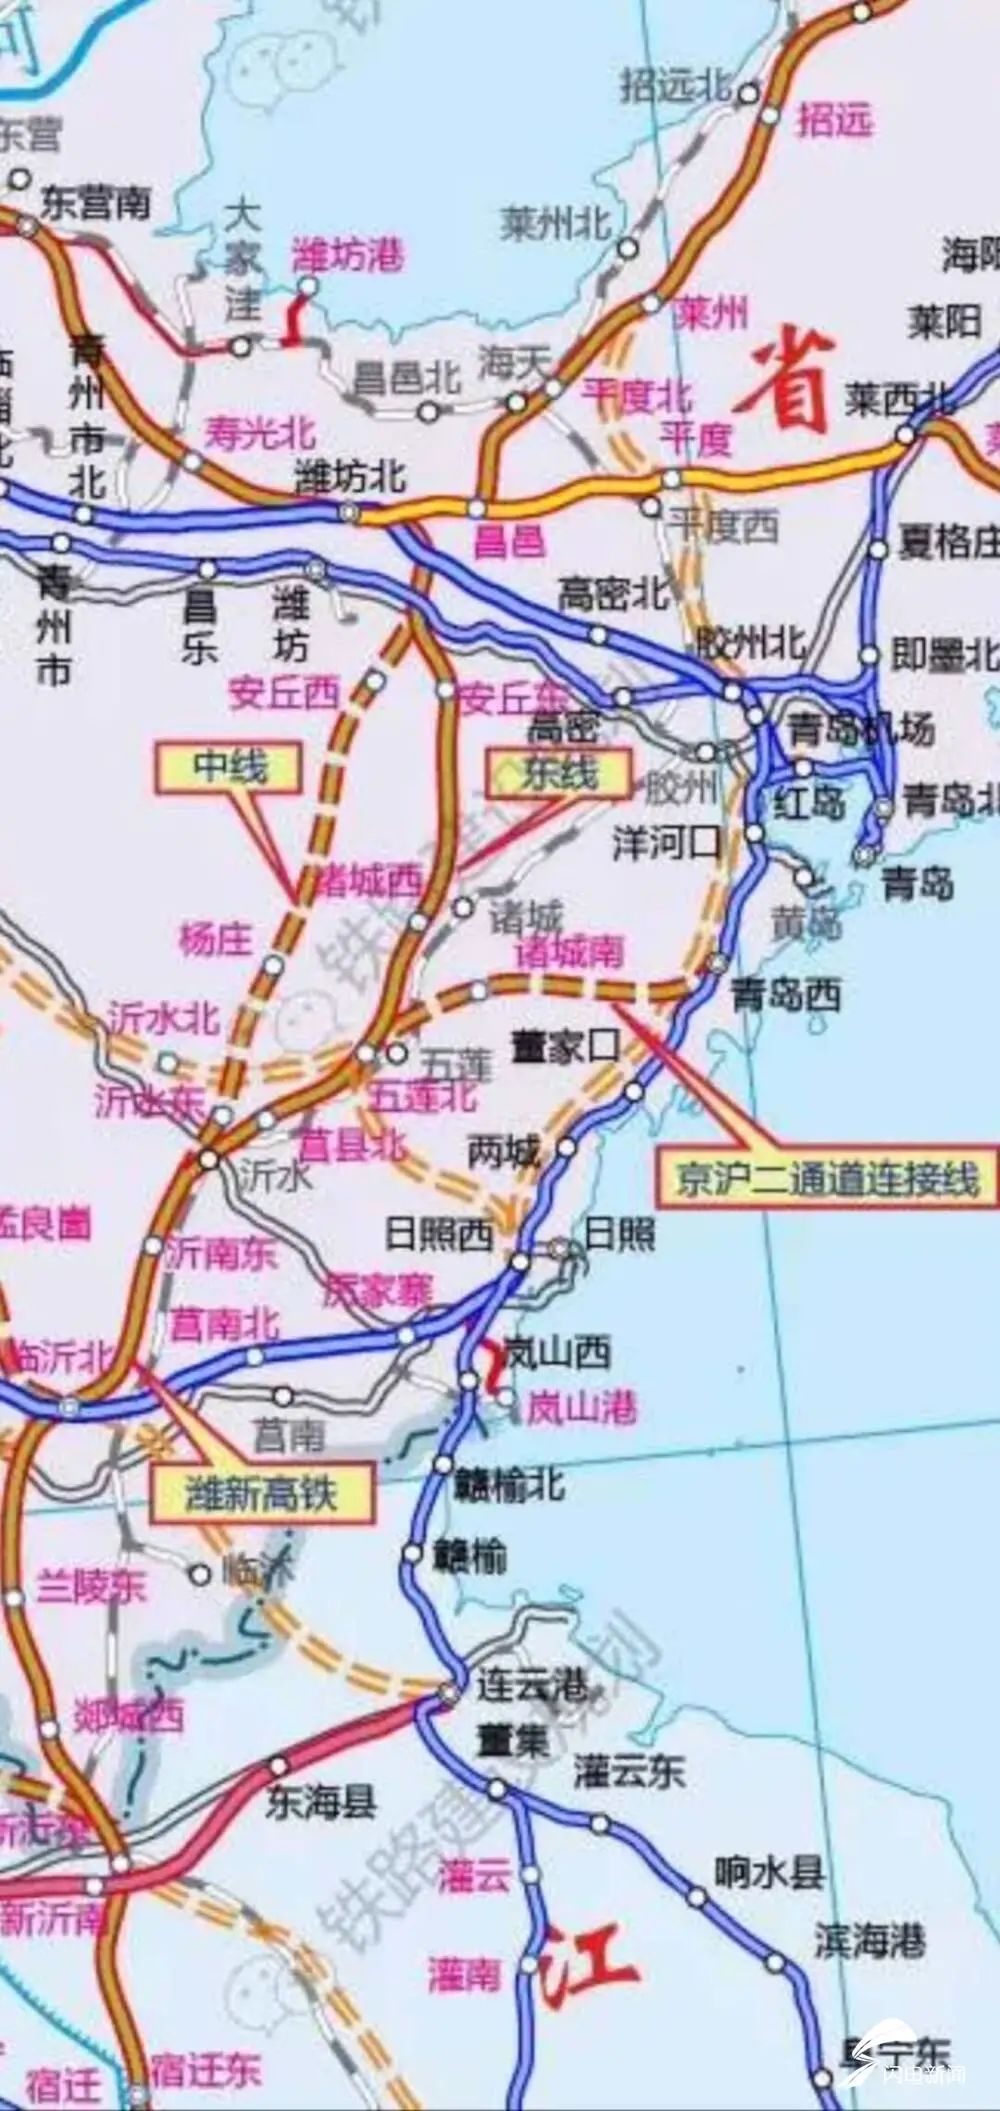 五莲北将成为高铁枢纽站,成为京沪二线,青聊高铁,莲日线(接鲁中高铁)